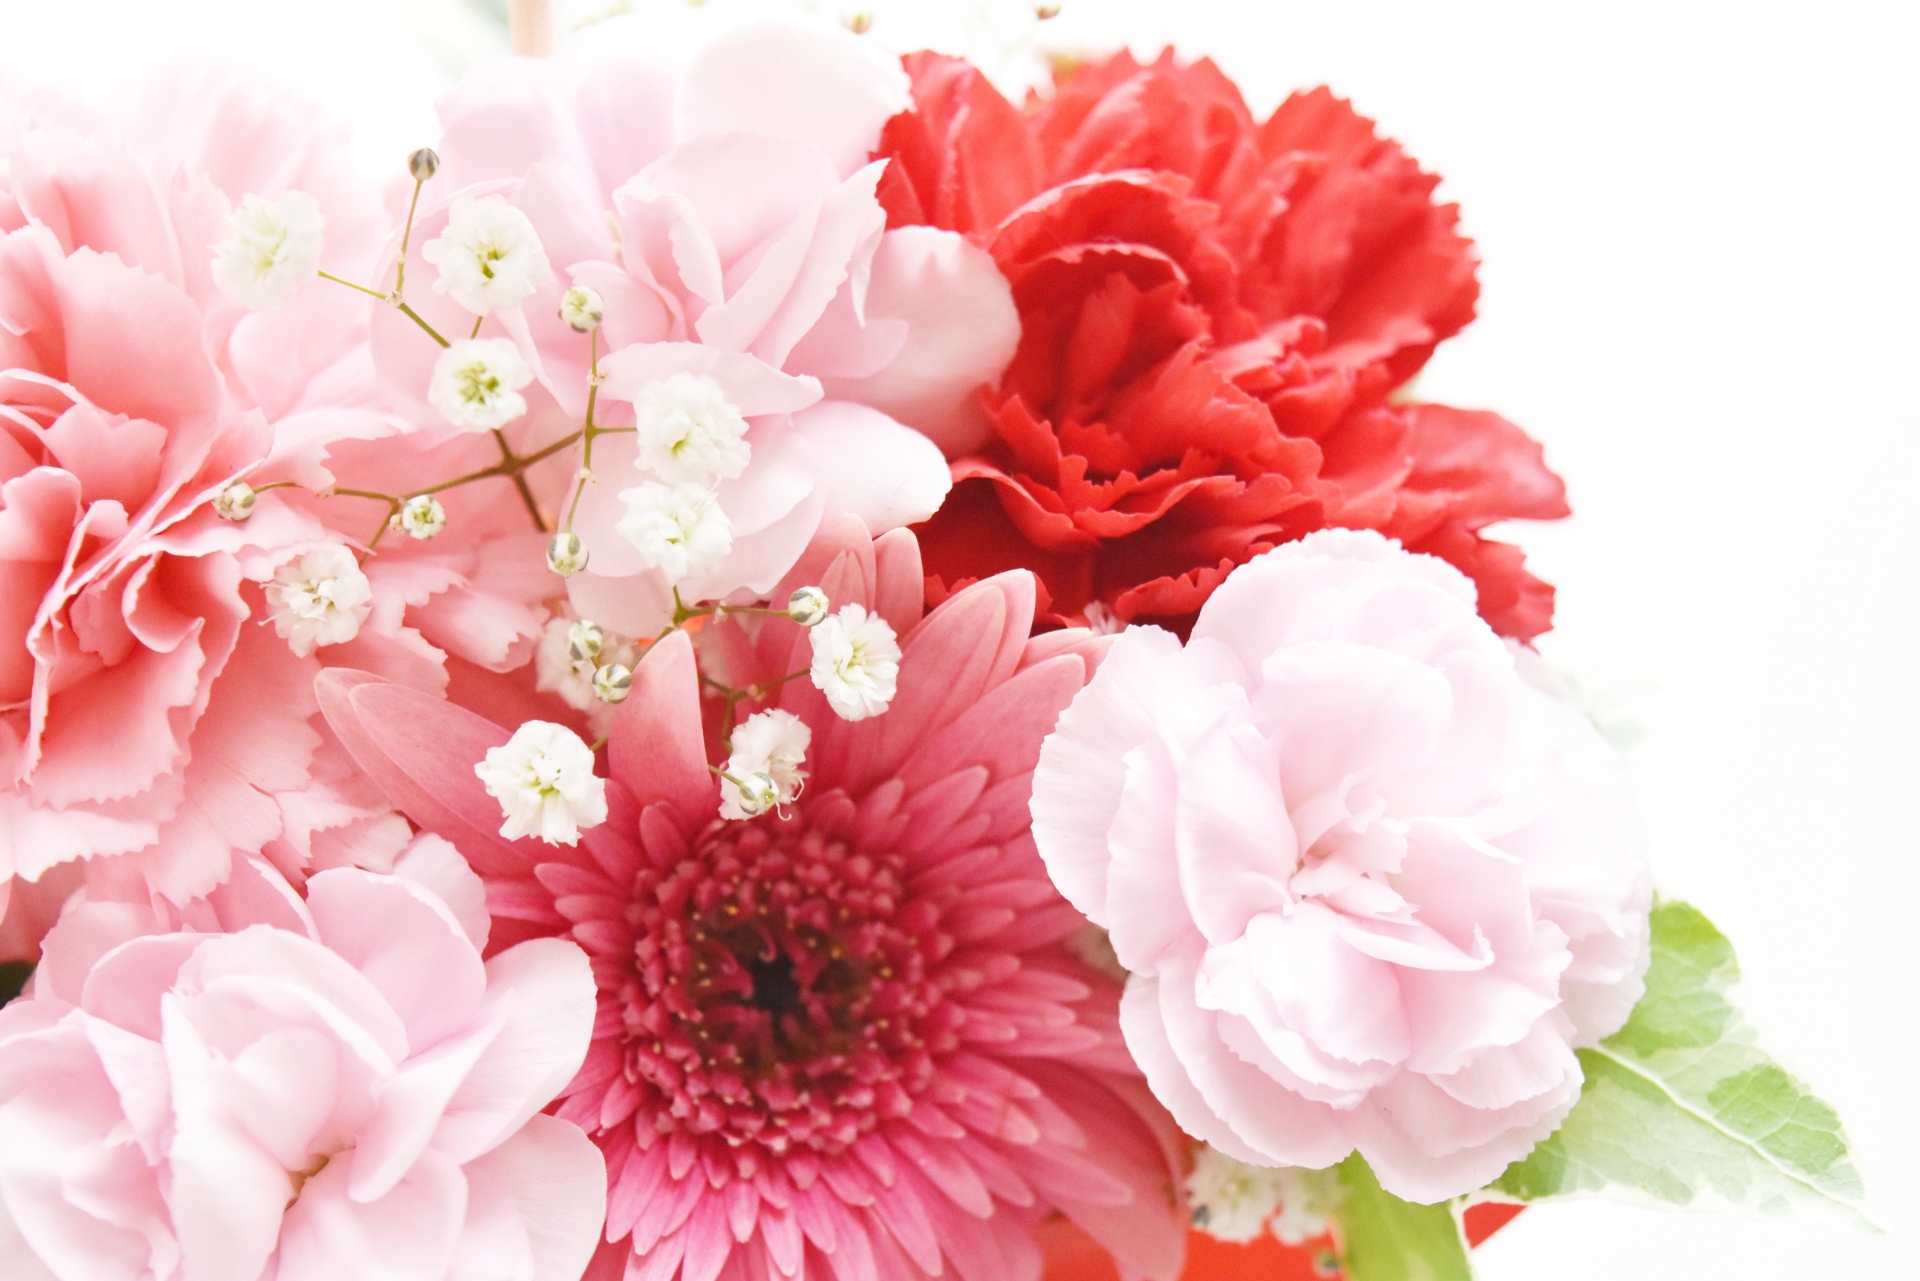 花屋さんでの上手な花束の頼み方 イメージを伝える注文のコツ フェミニバ